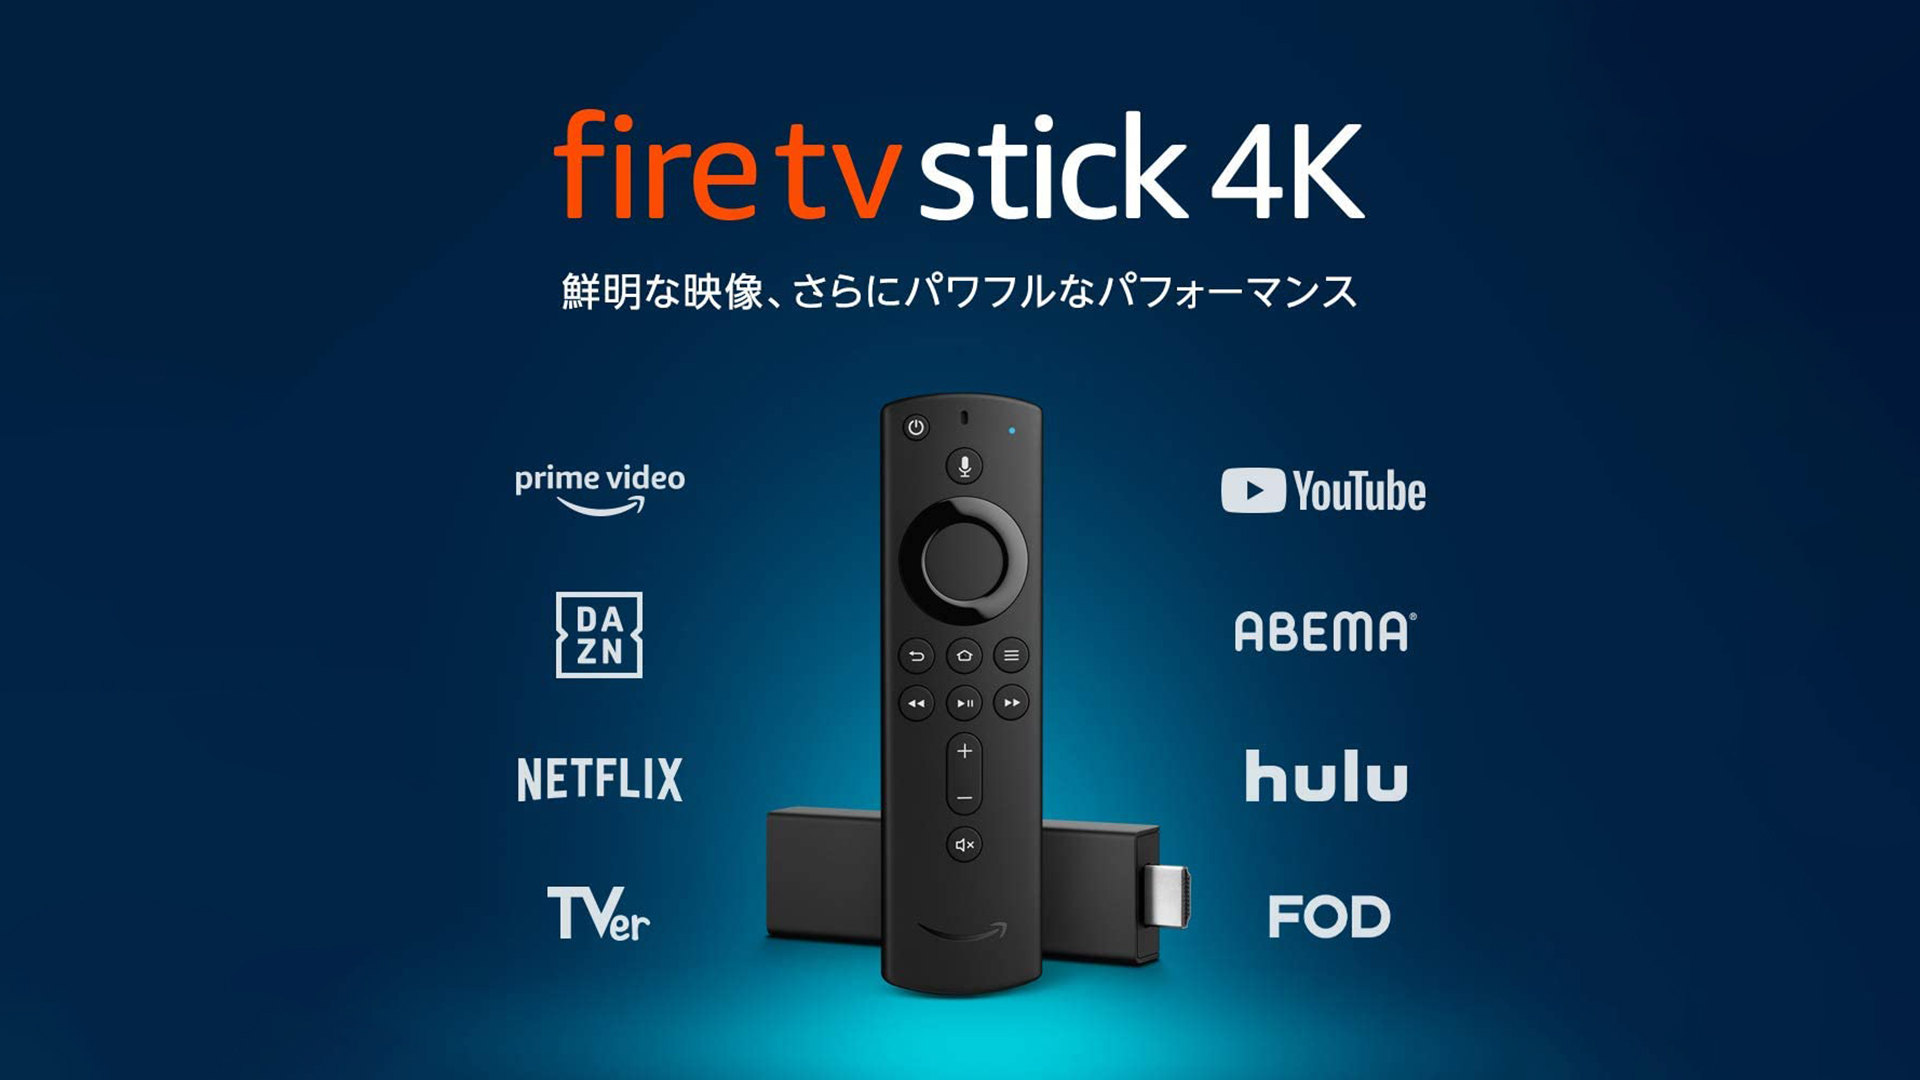 Fire TV Stick 4KがAmazonプライムデー限定価格で6,980円→3,980円と激安